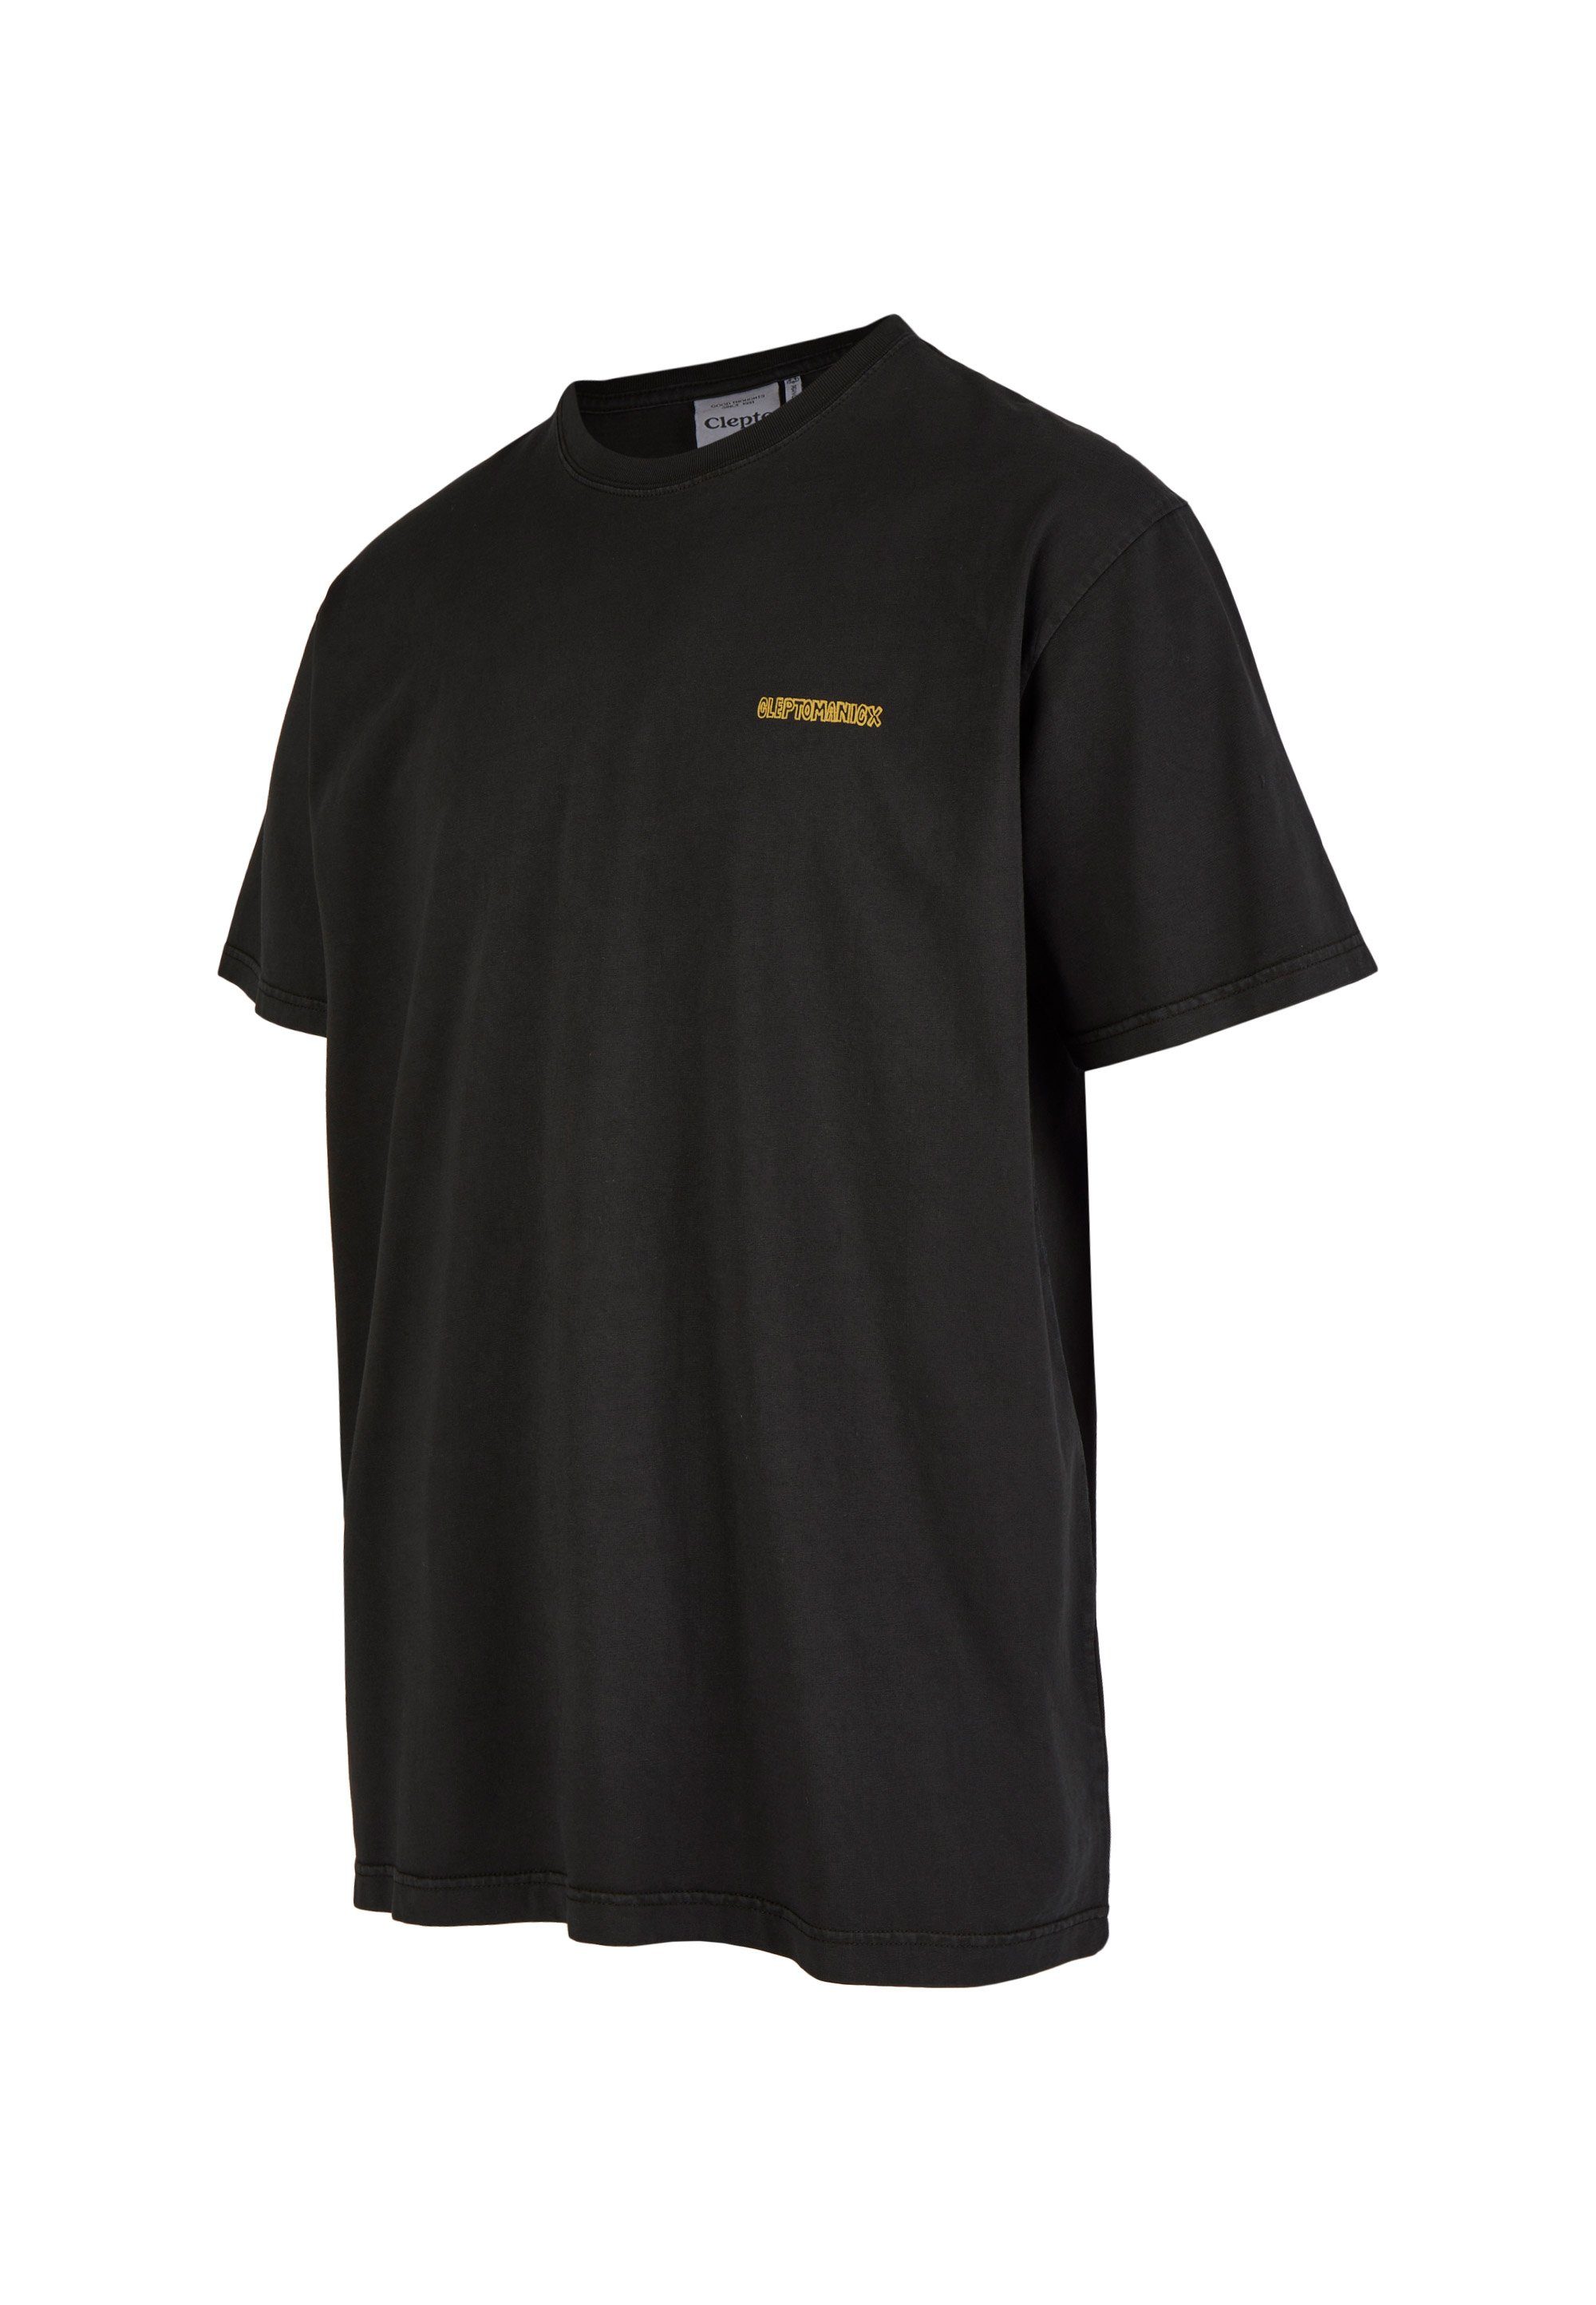 Unconscious T-Shirt coolem Cleptomanicx Print schwarz mit